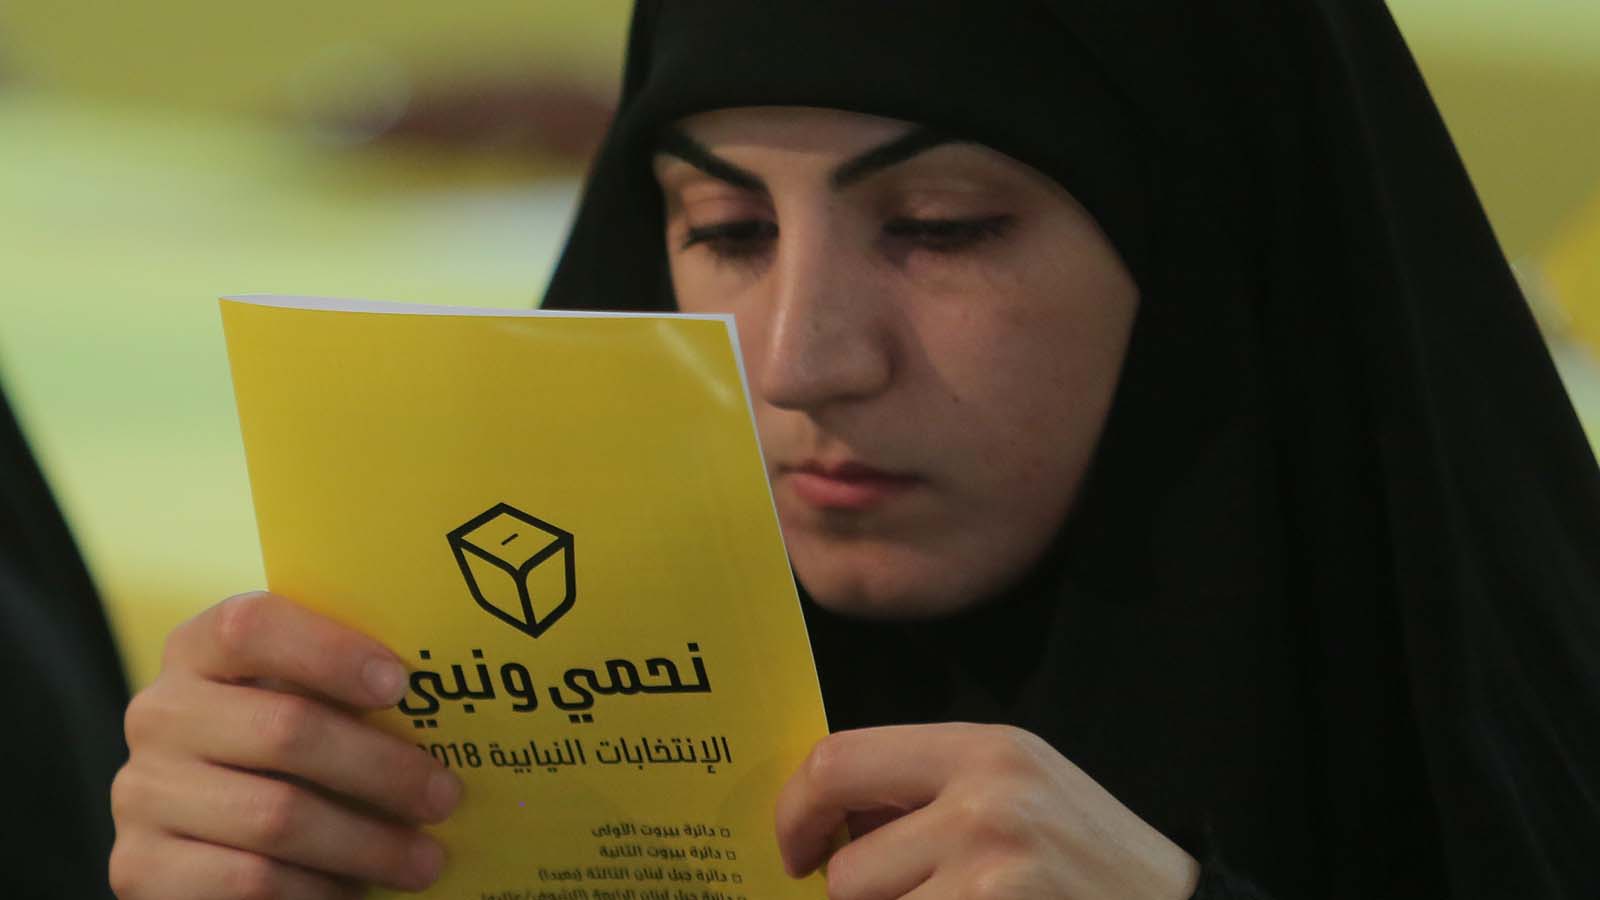 الانتخابات محسومة سلفاً: "التآمر" على الاغتراب وغلبة حزب الله